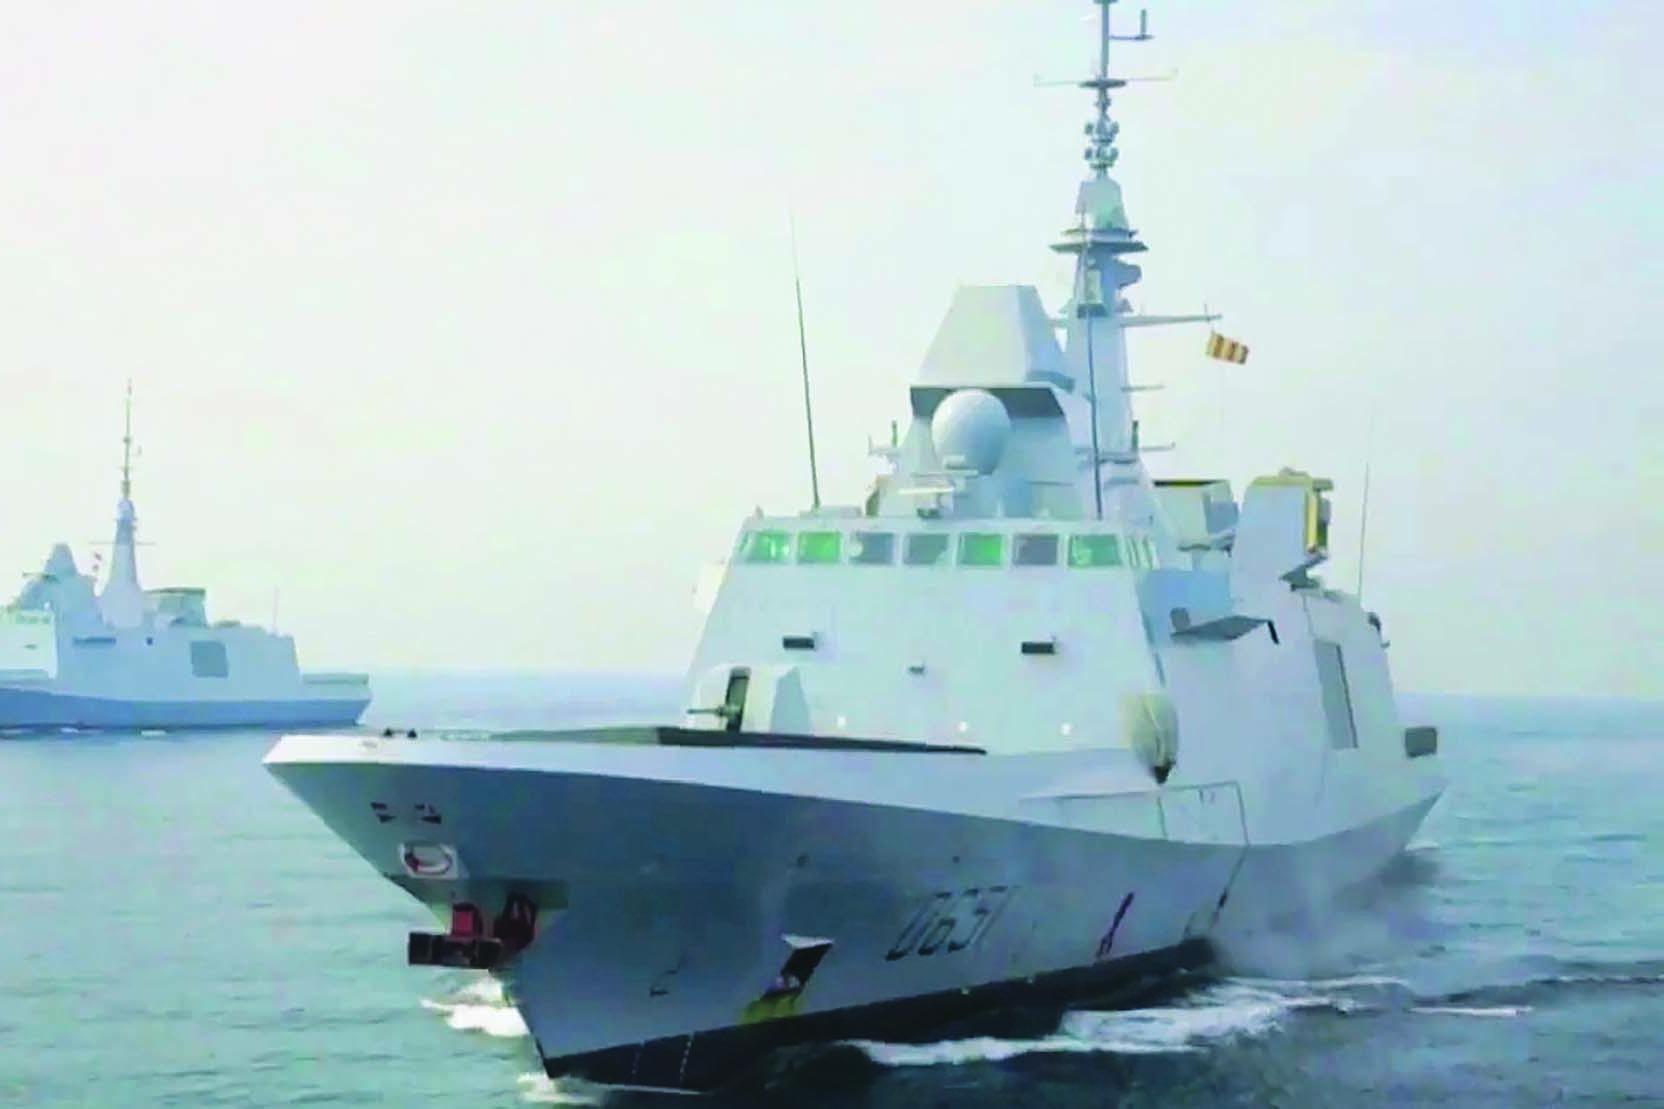 الفرقاطة المتعددة المهام FREMM من أهم منتجات Naval Group